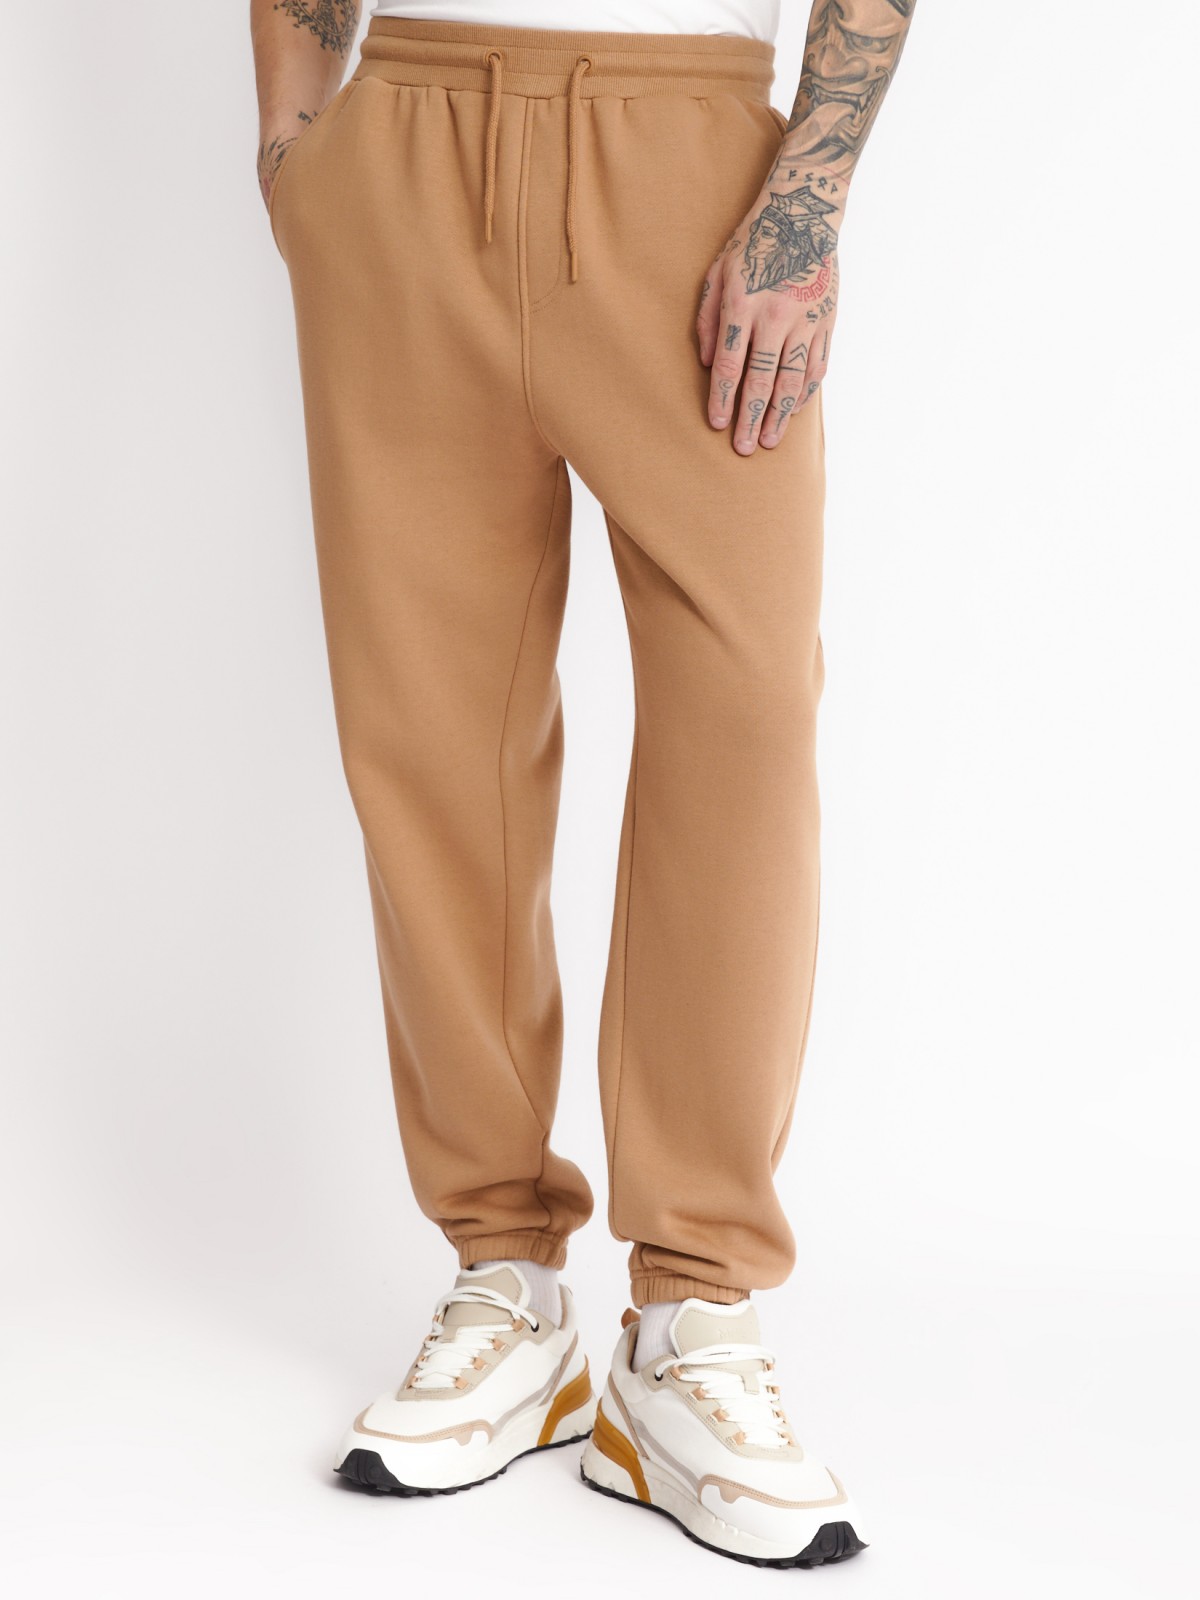 Утеплённые трикотажные брюки-джоггеры в спортивном стиле zolla 213327675022, цвет бежевый, размер XS - фото 4